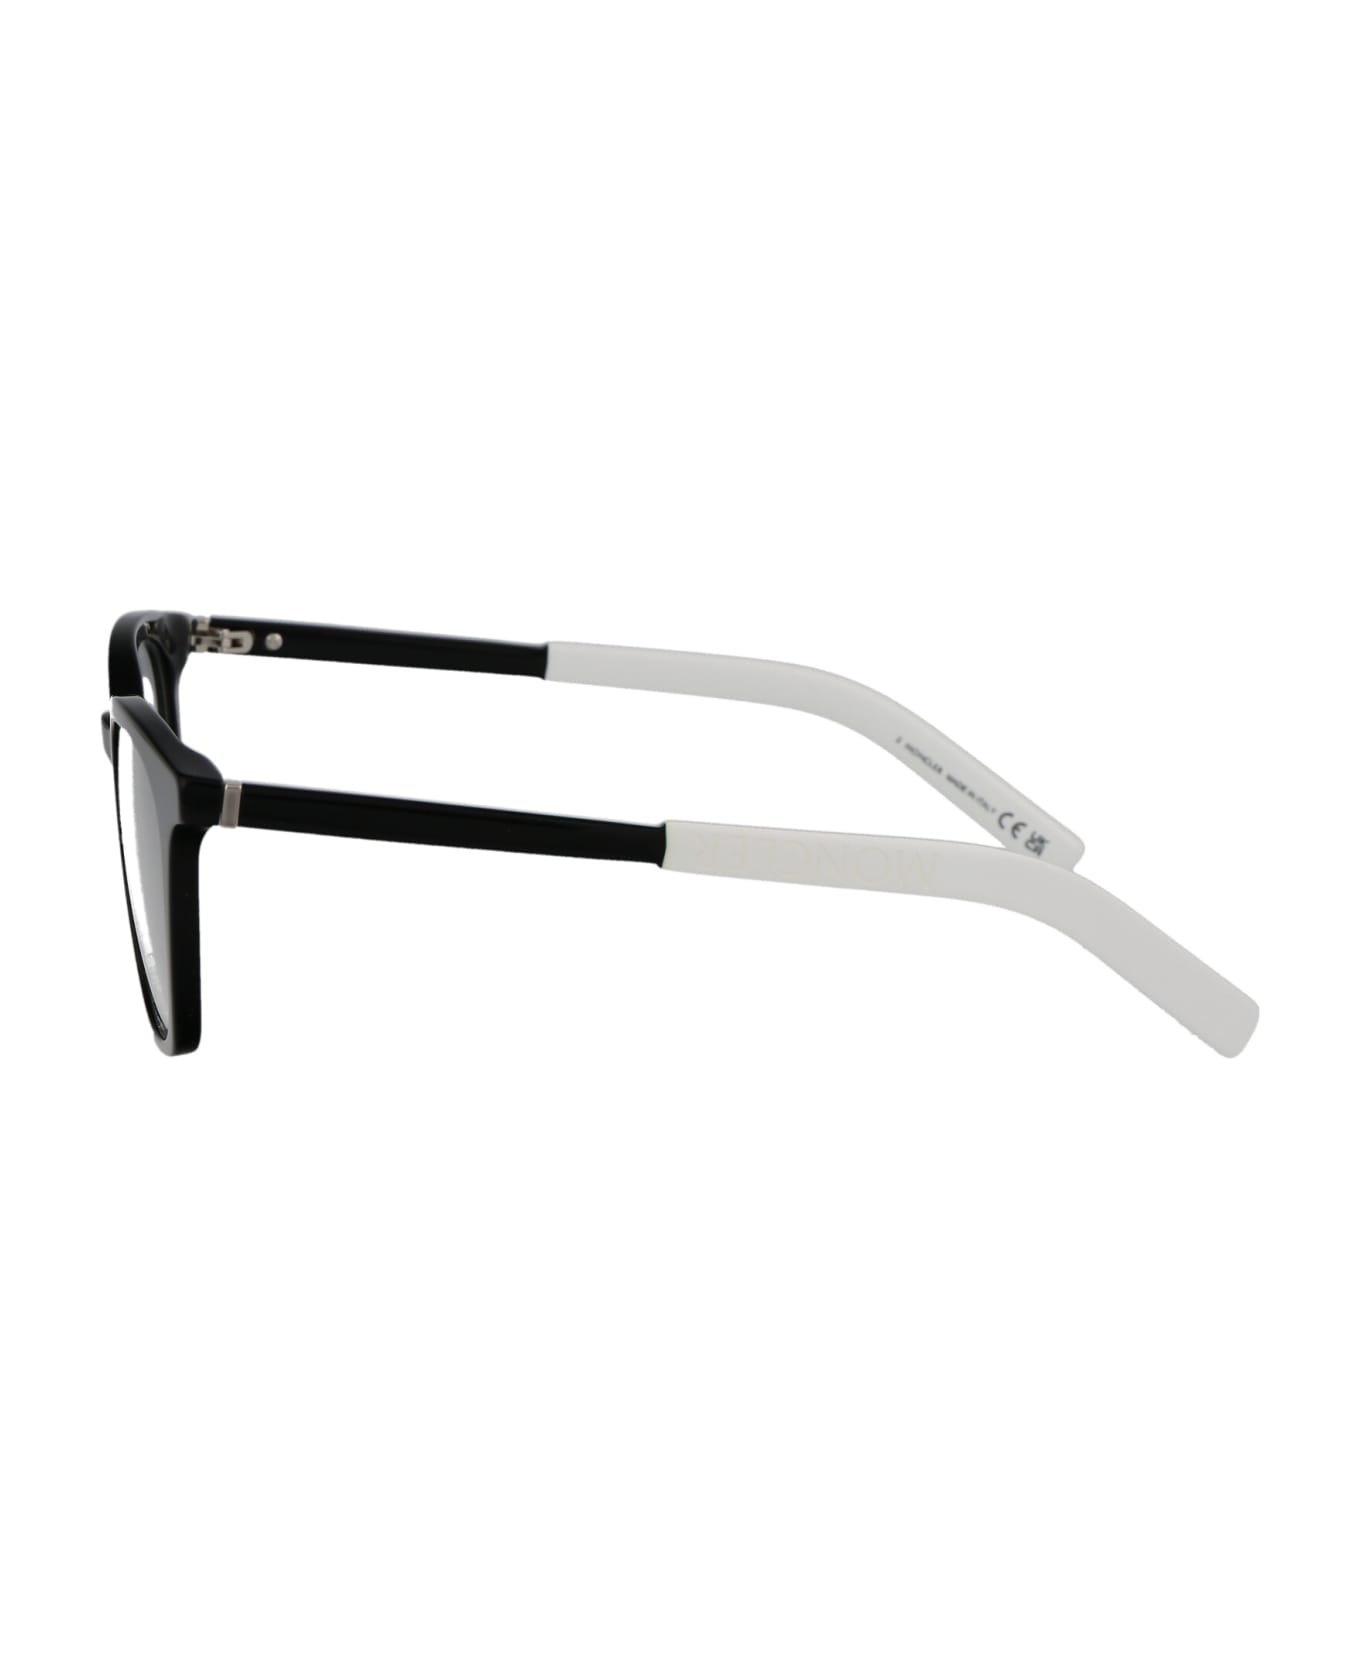 Moncler Eyewear Ml5207 Glasses - 001 Nero Lucido アイウェア